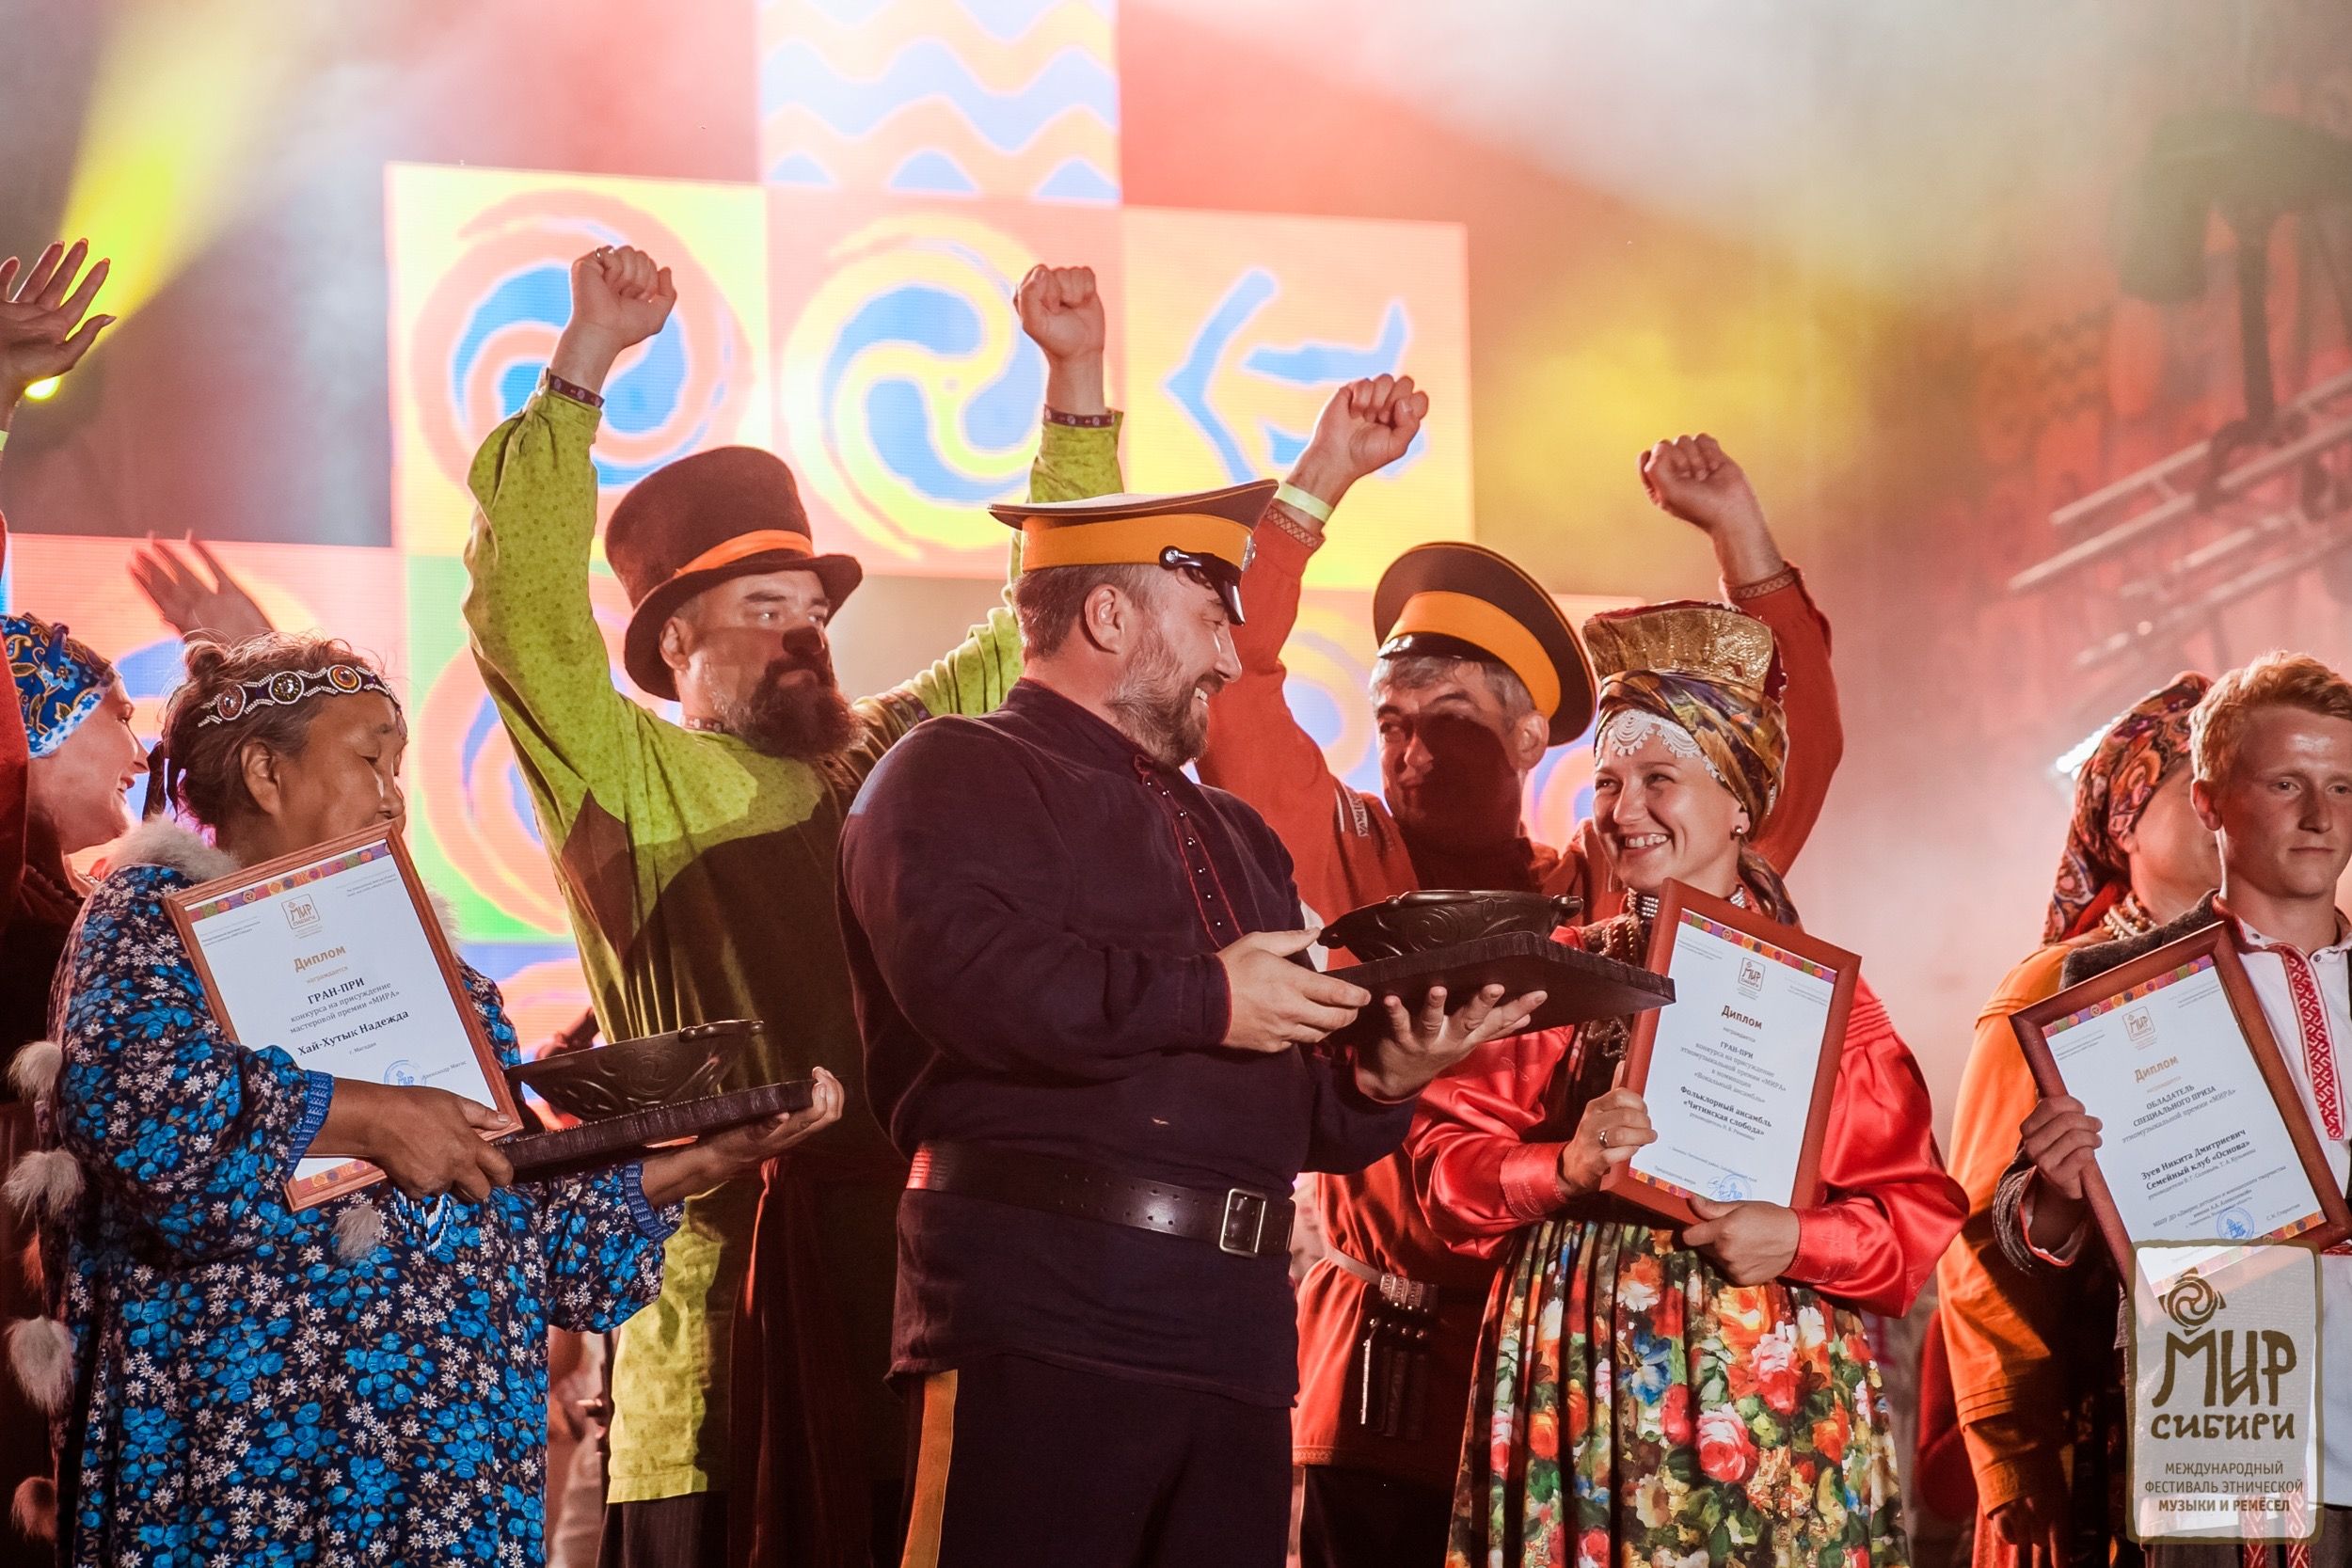 Стартовал приём заявок на конкурсы  Международного фестиваля этнической музыки и ремёсел «МИР Сибири» 2021